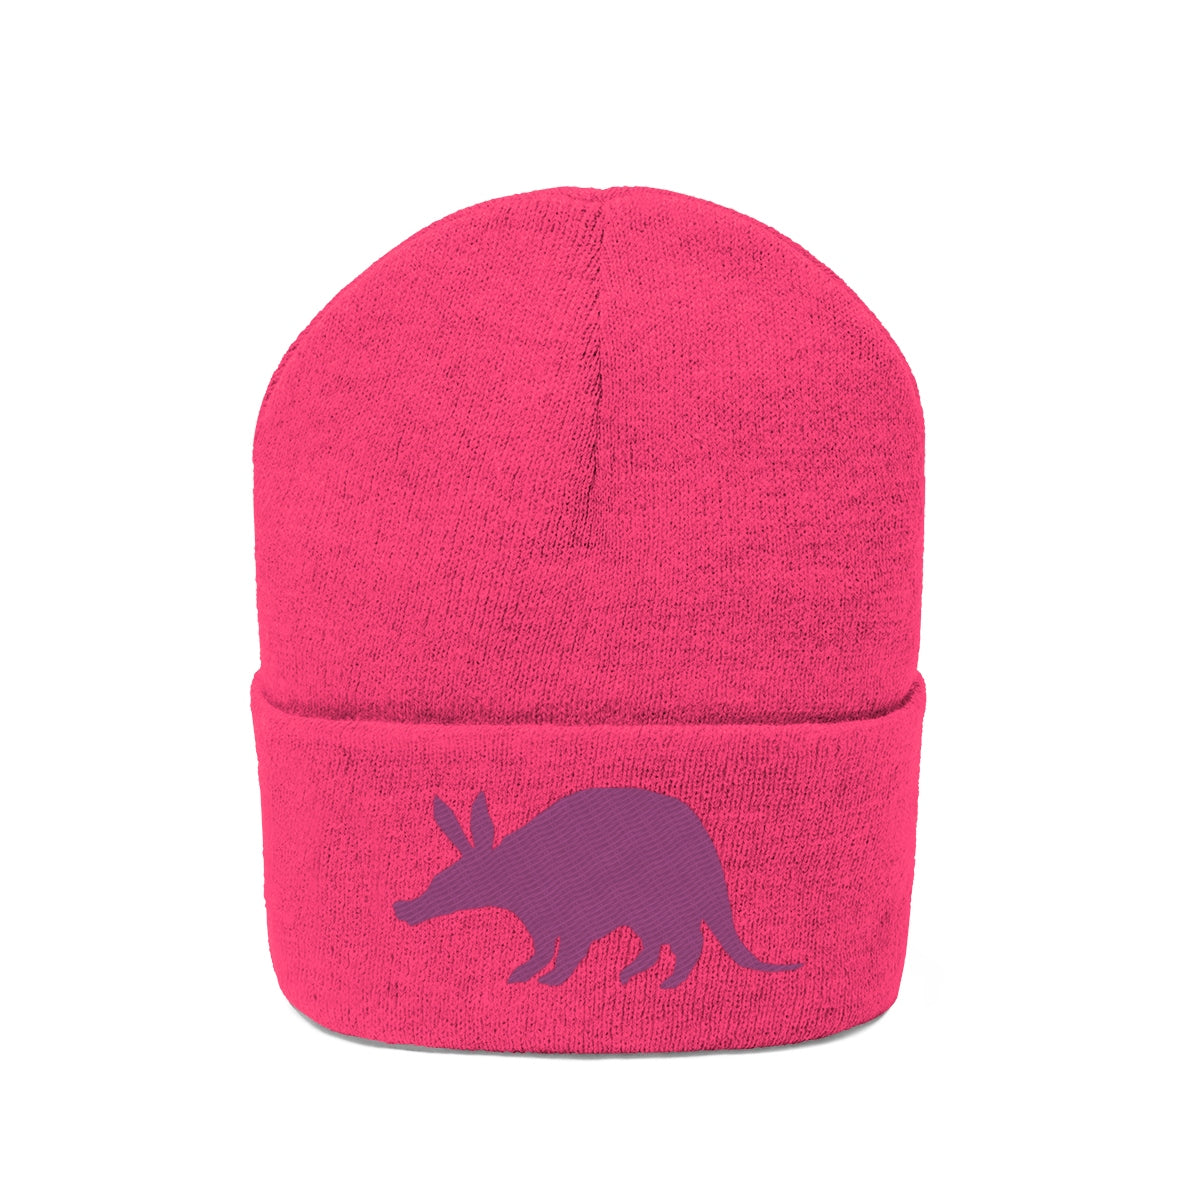 Aardvark Official - Embroidered Beanie - Aardvark Tees - Tees that Please